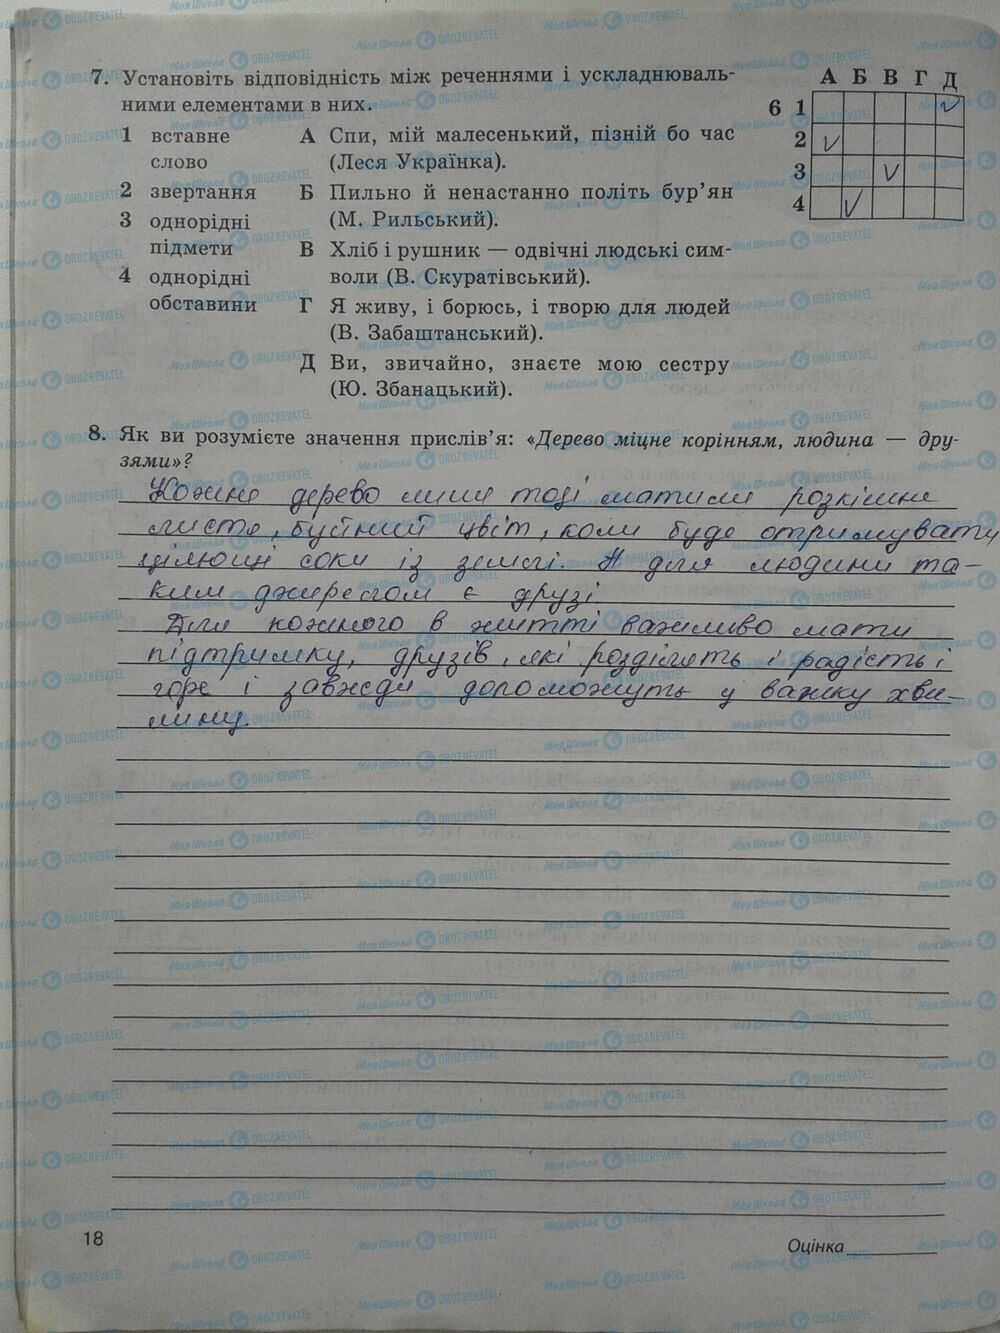 ГДЗ Укр мова 5 класс страница стр. 18